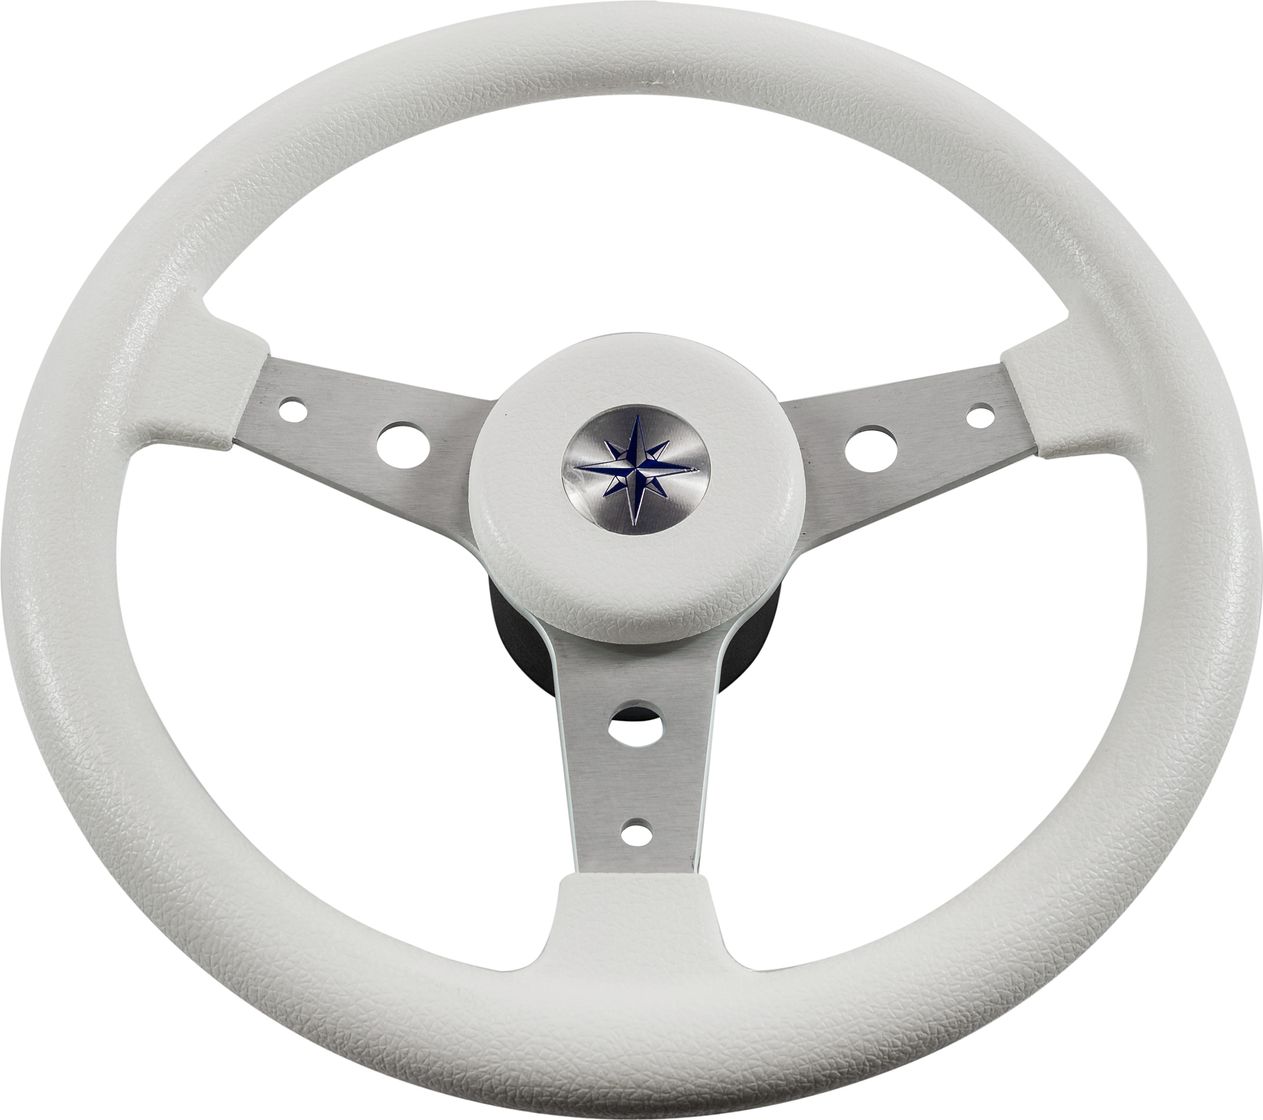 Рулевое колесо DELFINO обод белый,спицы серебряные д. 340 мм VN70401-08 рулевое колесо delfino обод спицы серебряные д 340 мм vn70401 01